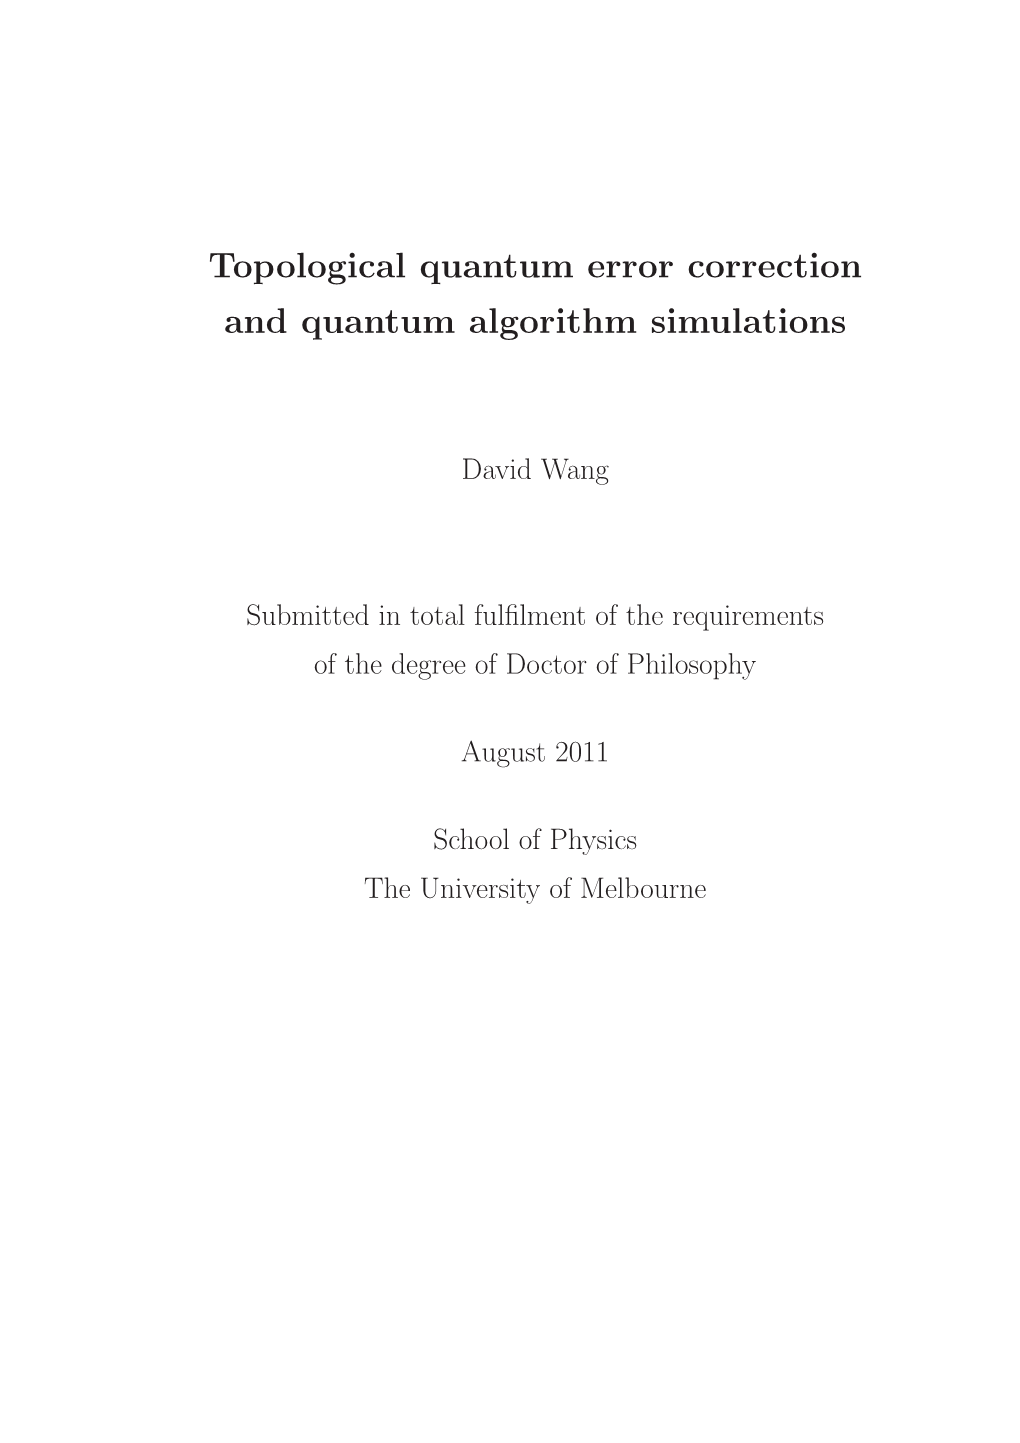 Topological Quantum Error Correction and Quantum Algorithm Simulations